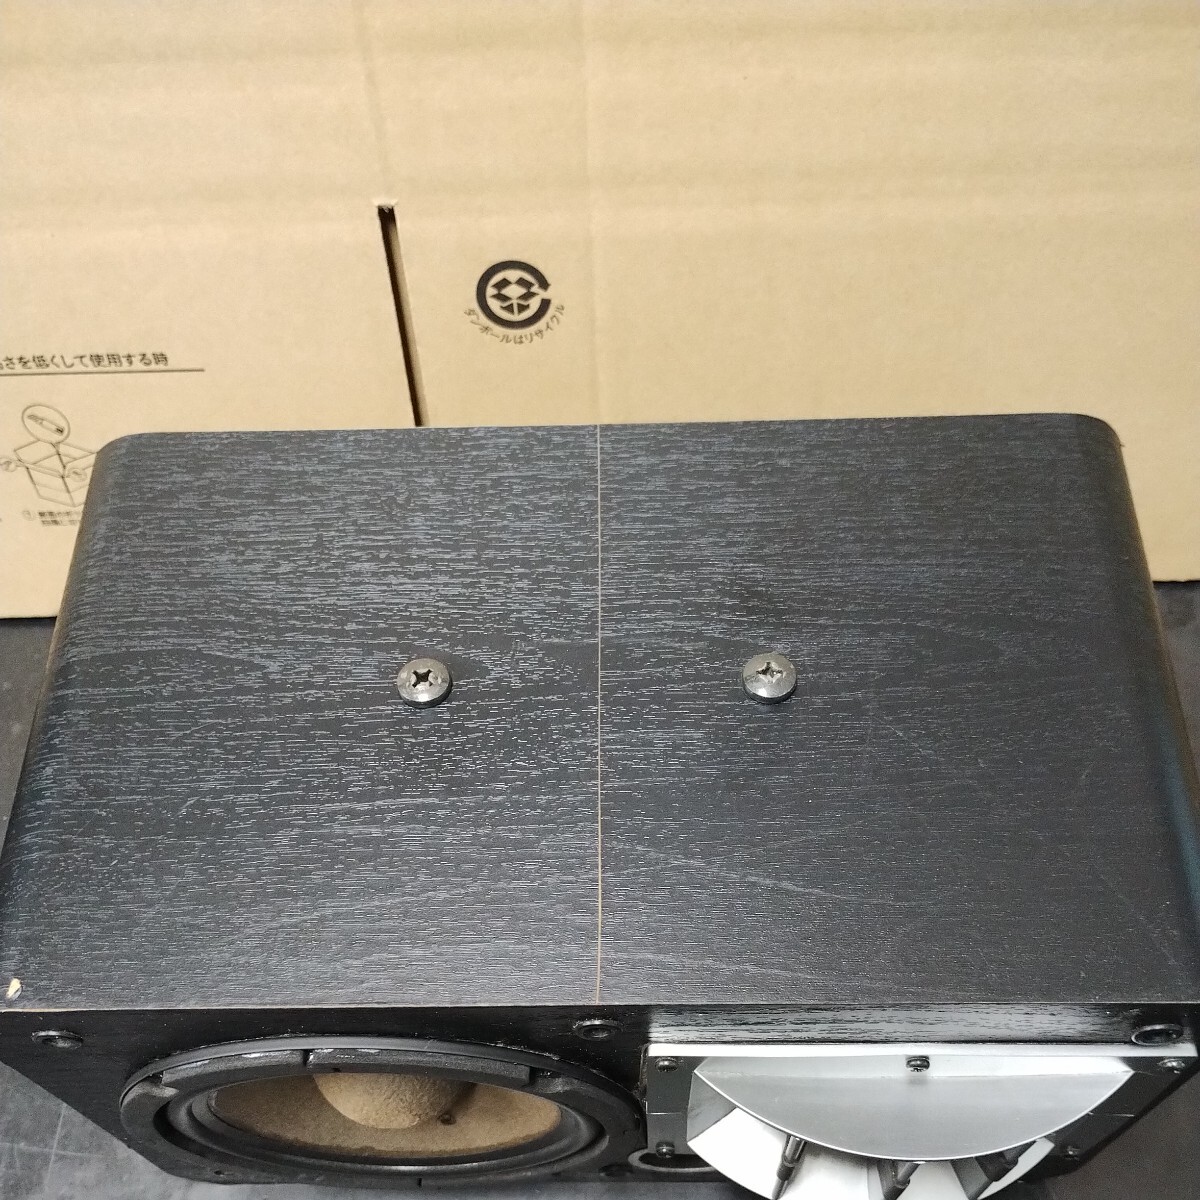 IFBI81 JOYSOUND×UGA Joy sound uga speaker CS-02 only one right side used inspection operation goods edge exchange 